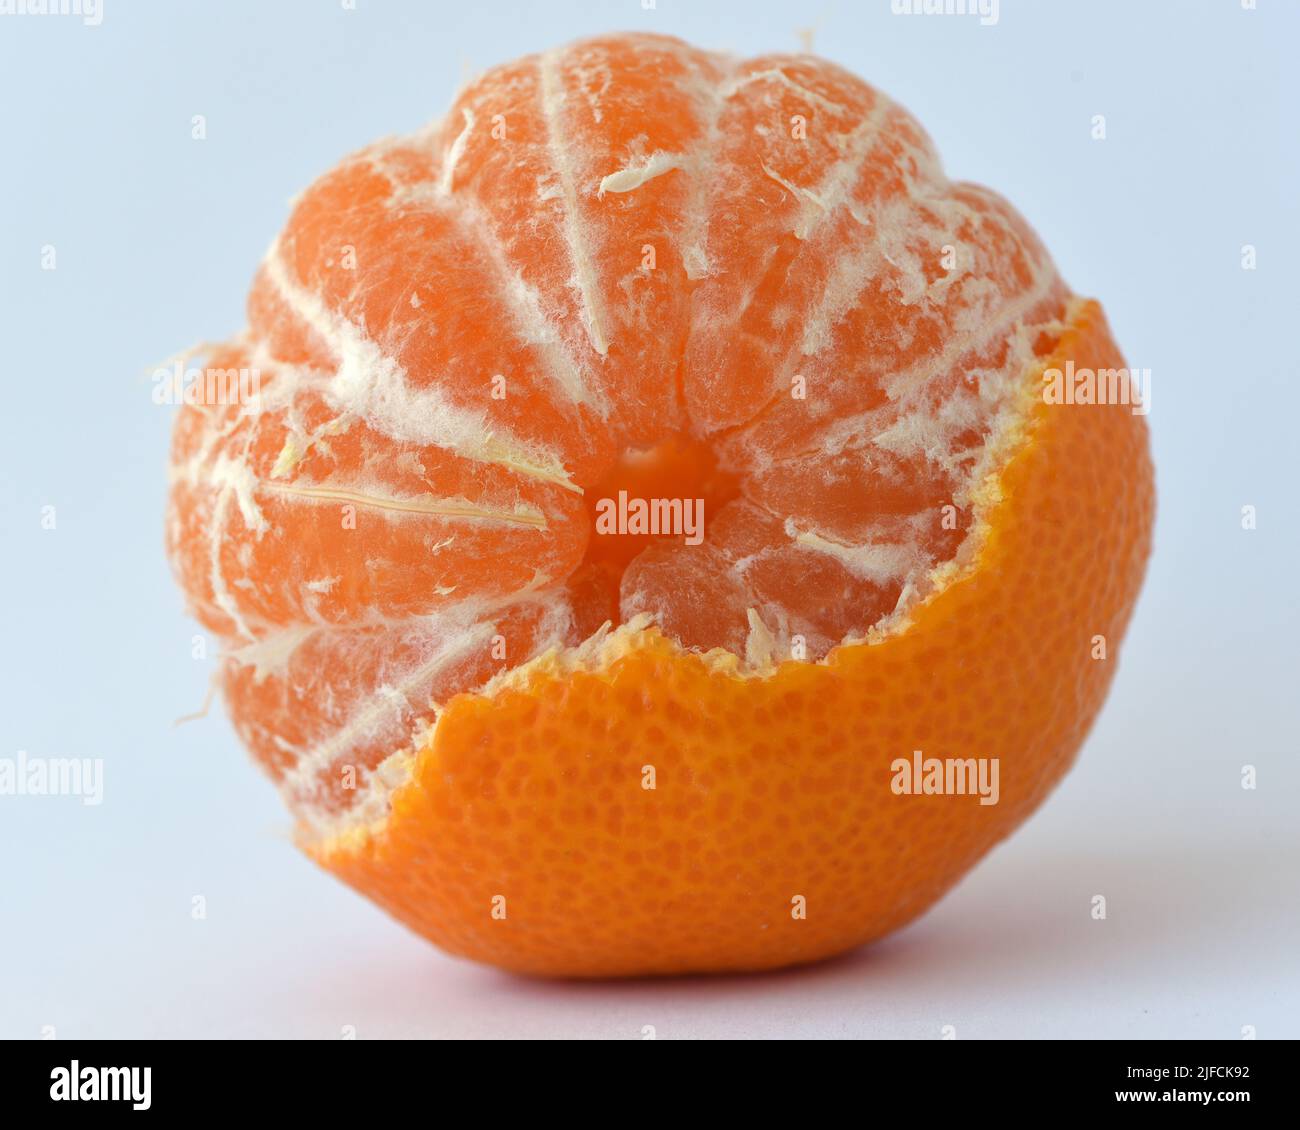 Una vista della parte superiore di un frutto di arancia parzialmente pelato con segmenti visibili Foto Stock